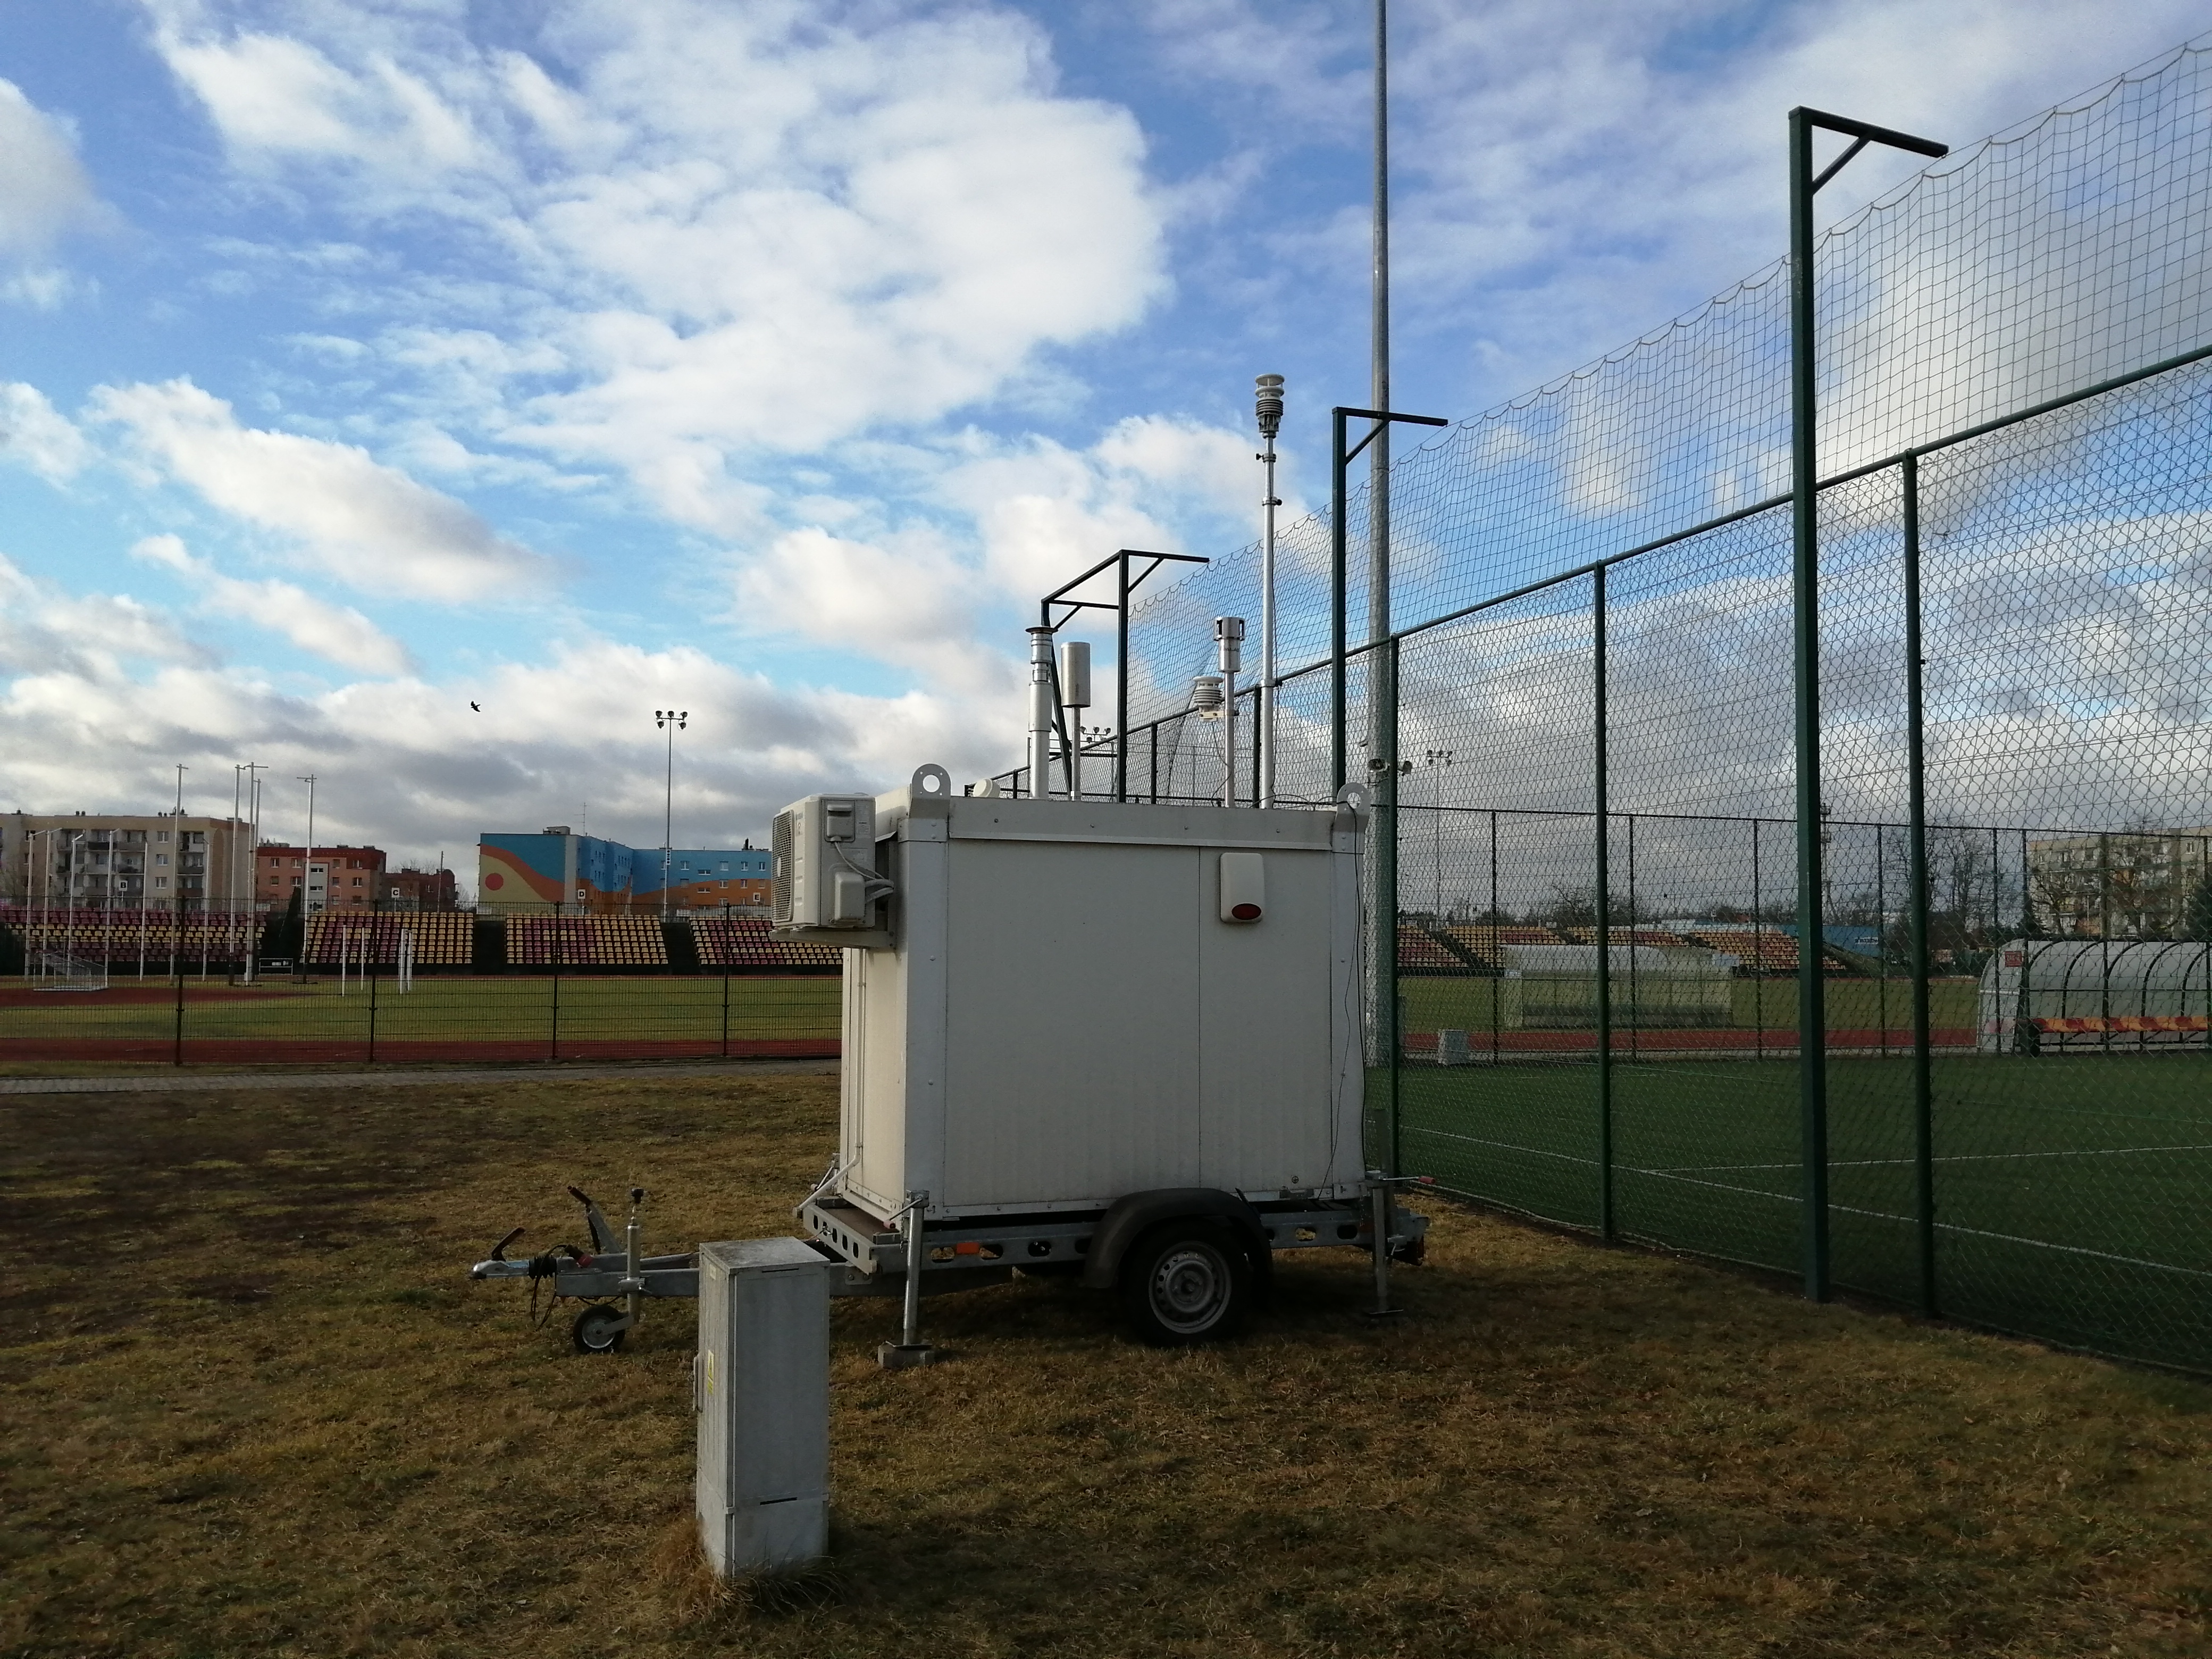   Mobilna stacja monitoringu powietrza w Żaganiu przy ul. Kochanowskiego